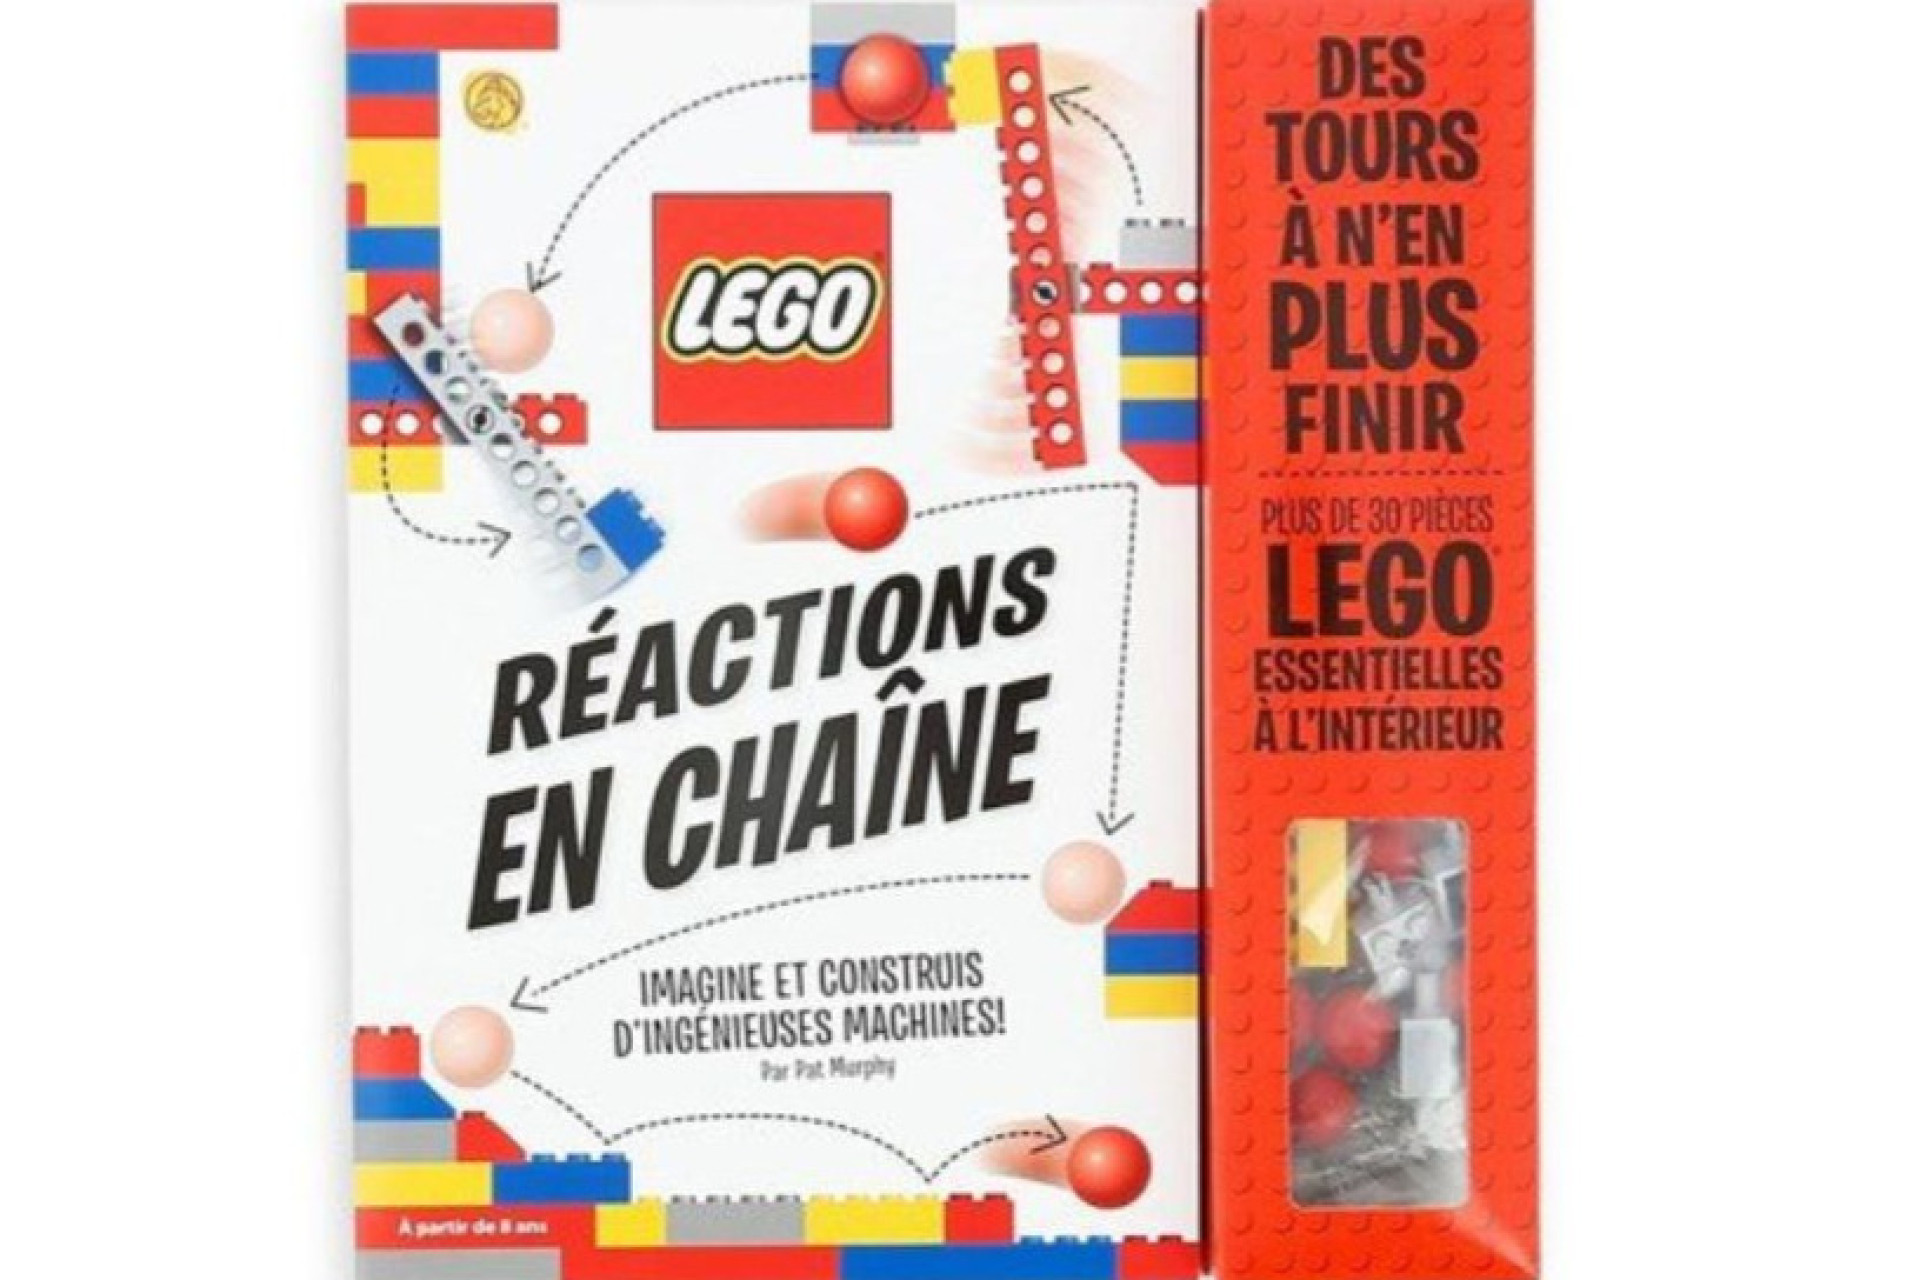 Acheter Lego : Réactions En Chaîne - Imagine Et Construis D'ingénieuses Machines !